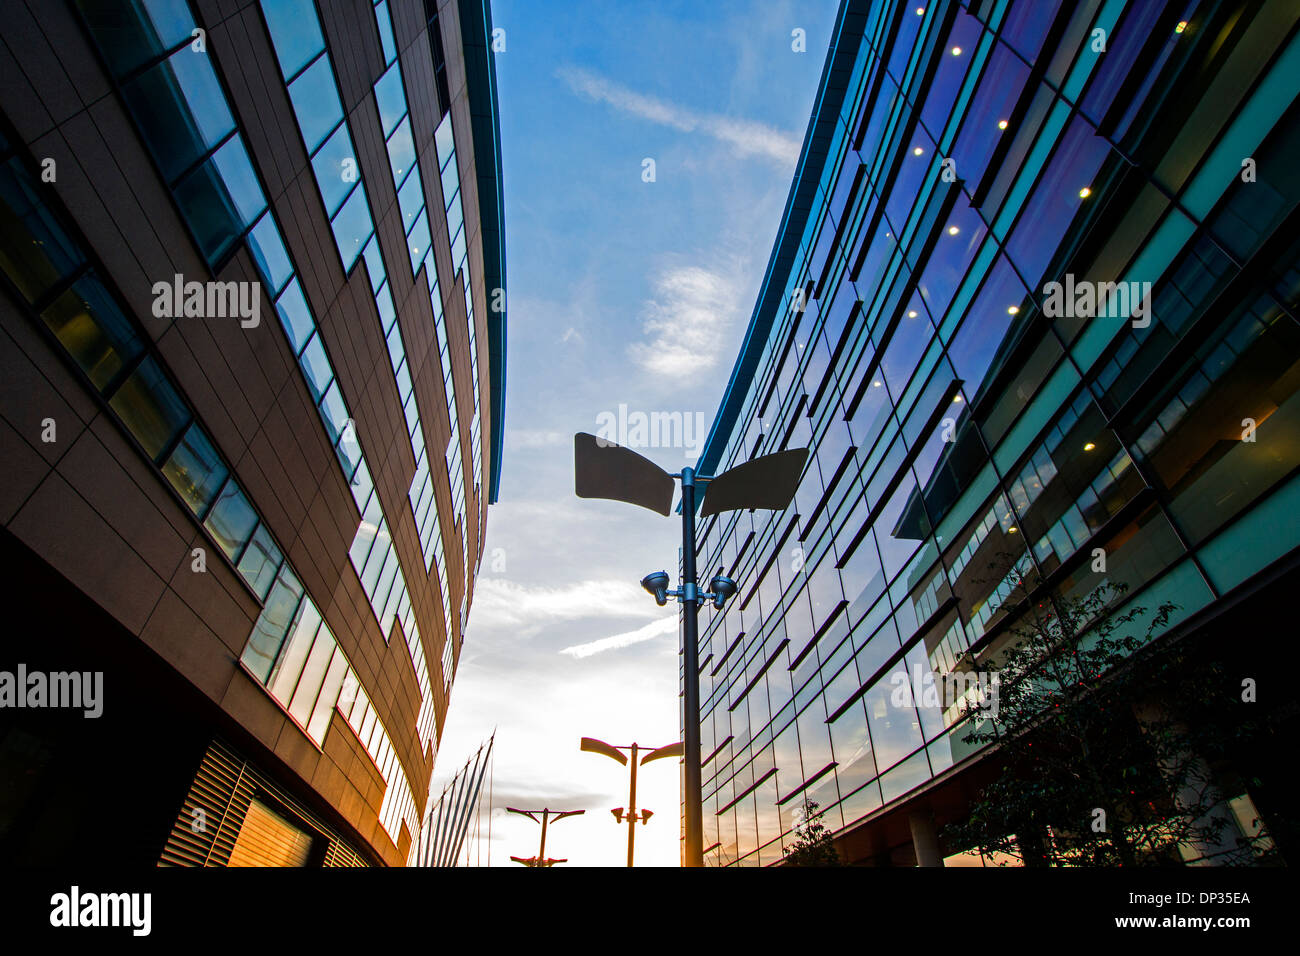 Les bâtiments dans le cadre de MEdia City à Salford Quays, Manchester England UK Banque D'Images